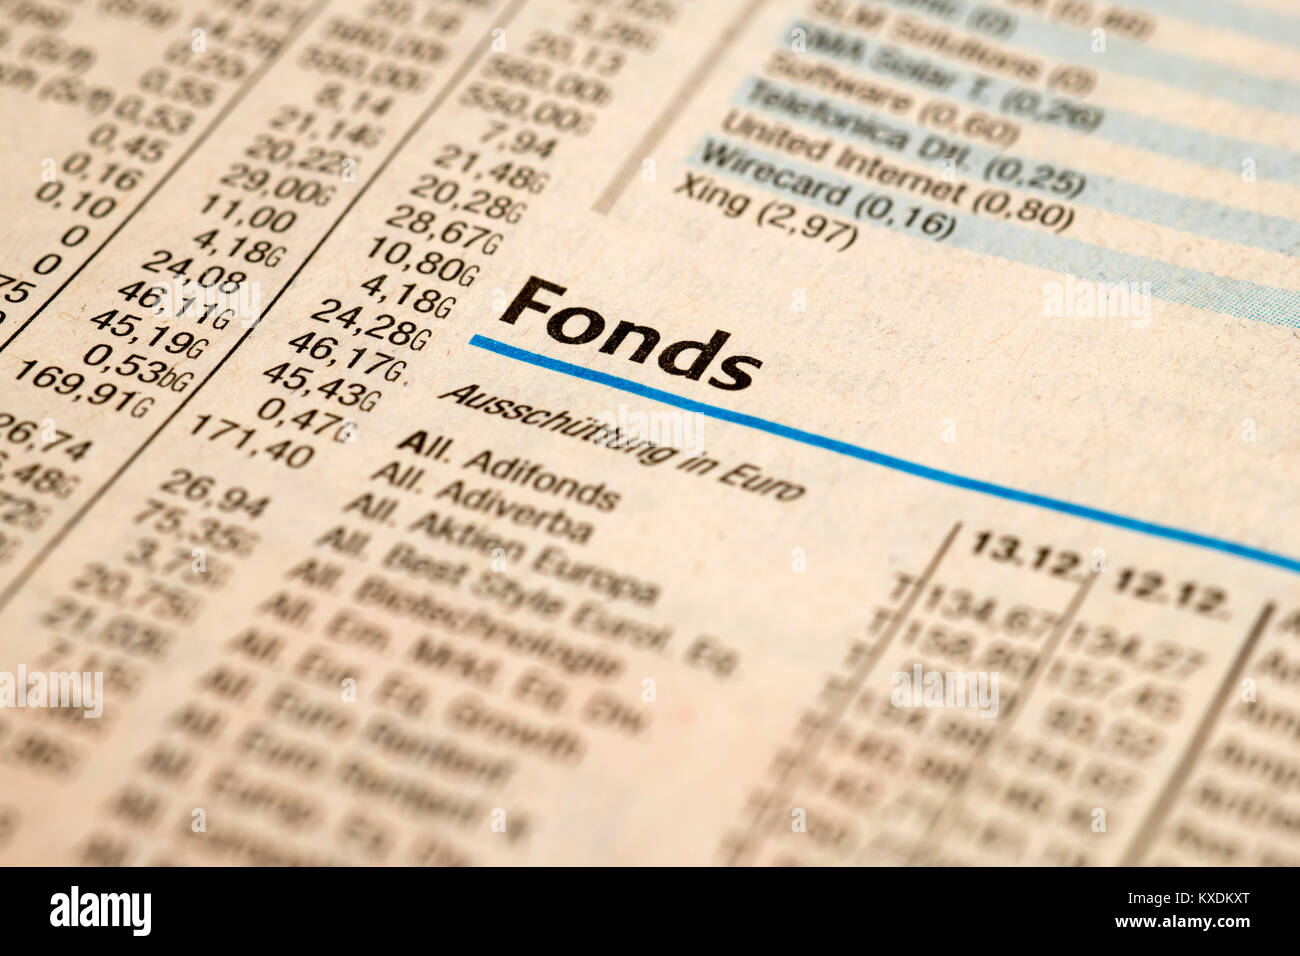 Fondo, stock exchange parte di un giornale quotidiano Foto Stock